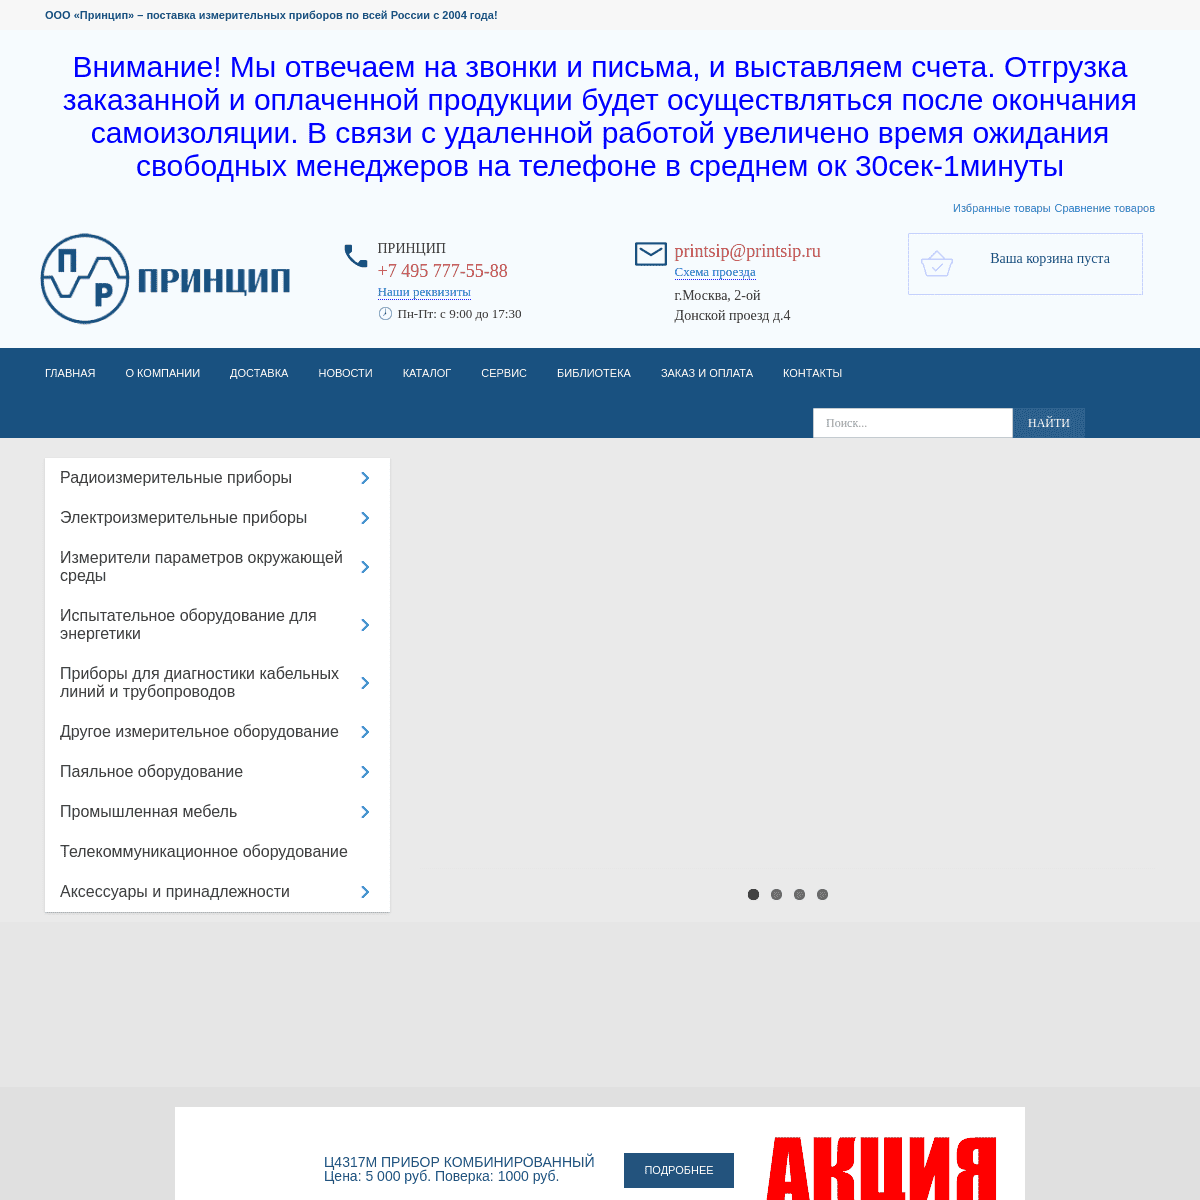 A complete backup of printsip.ru